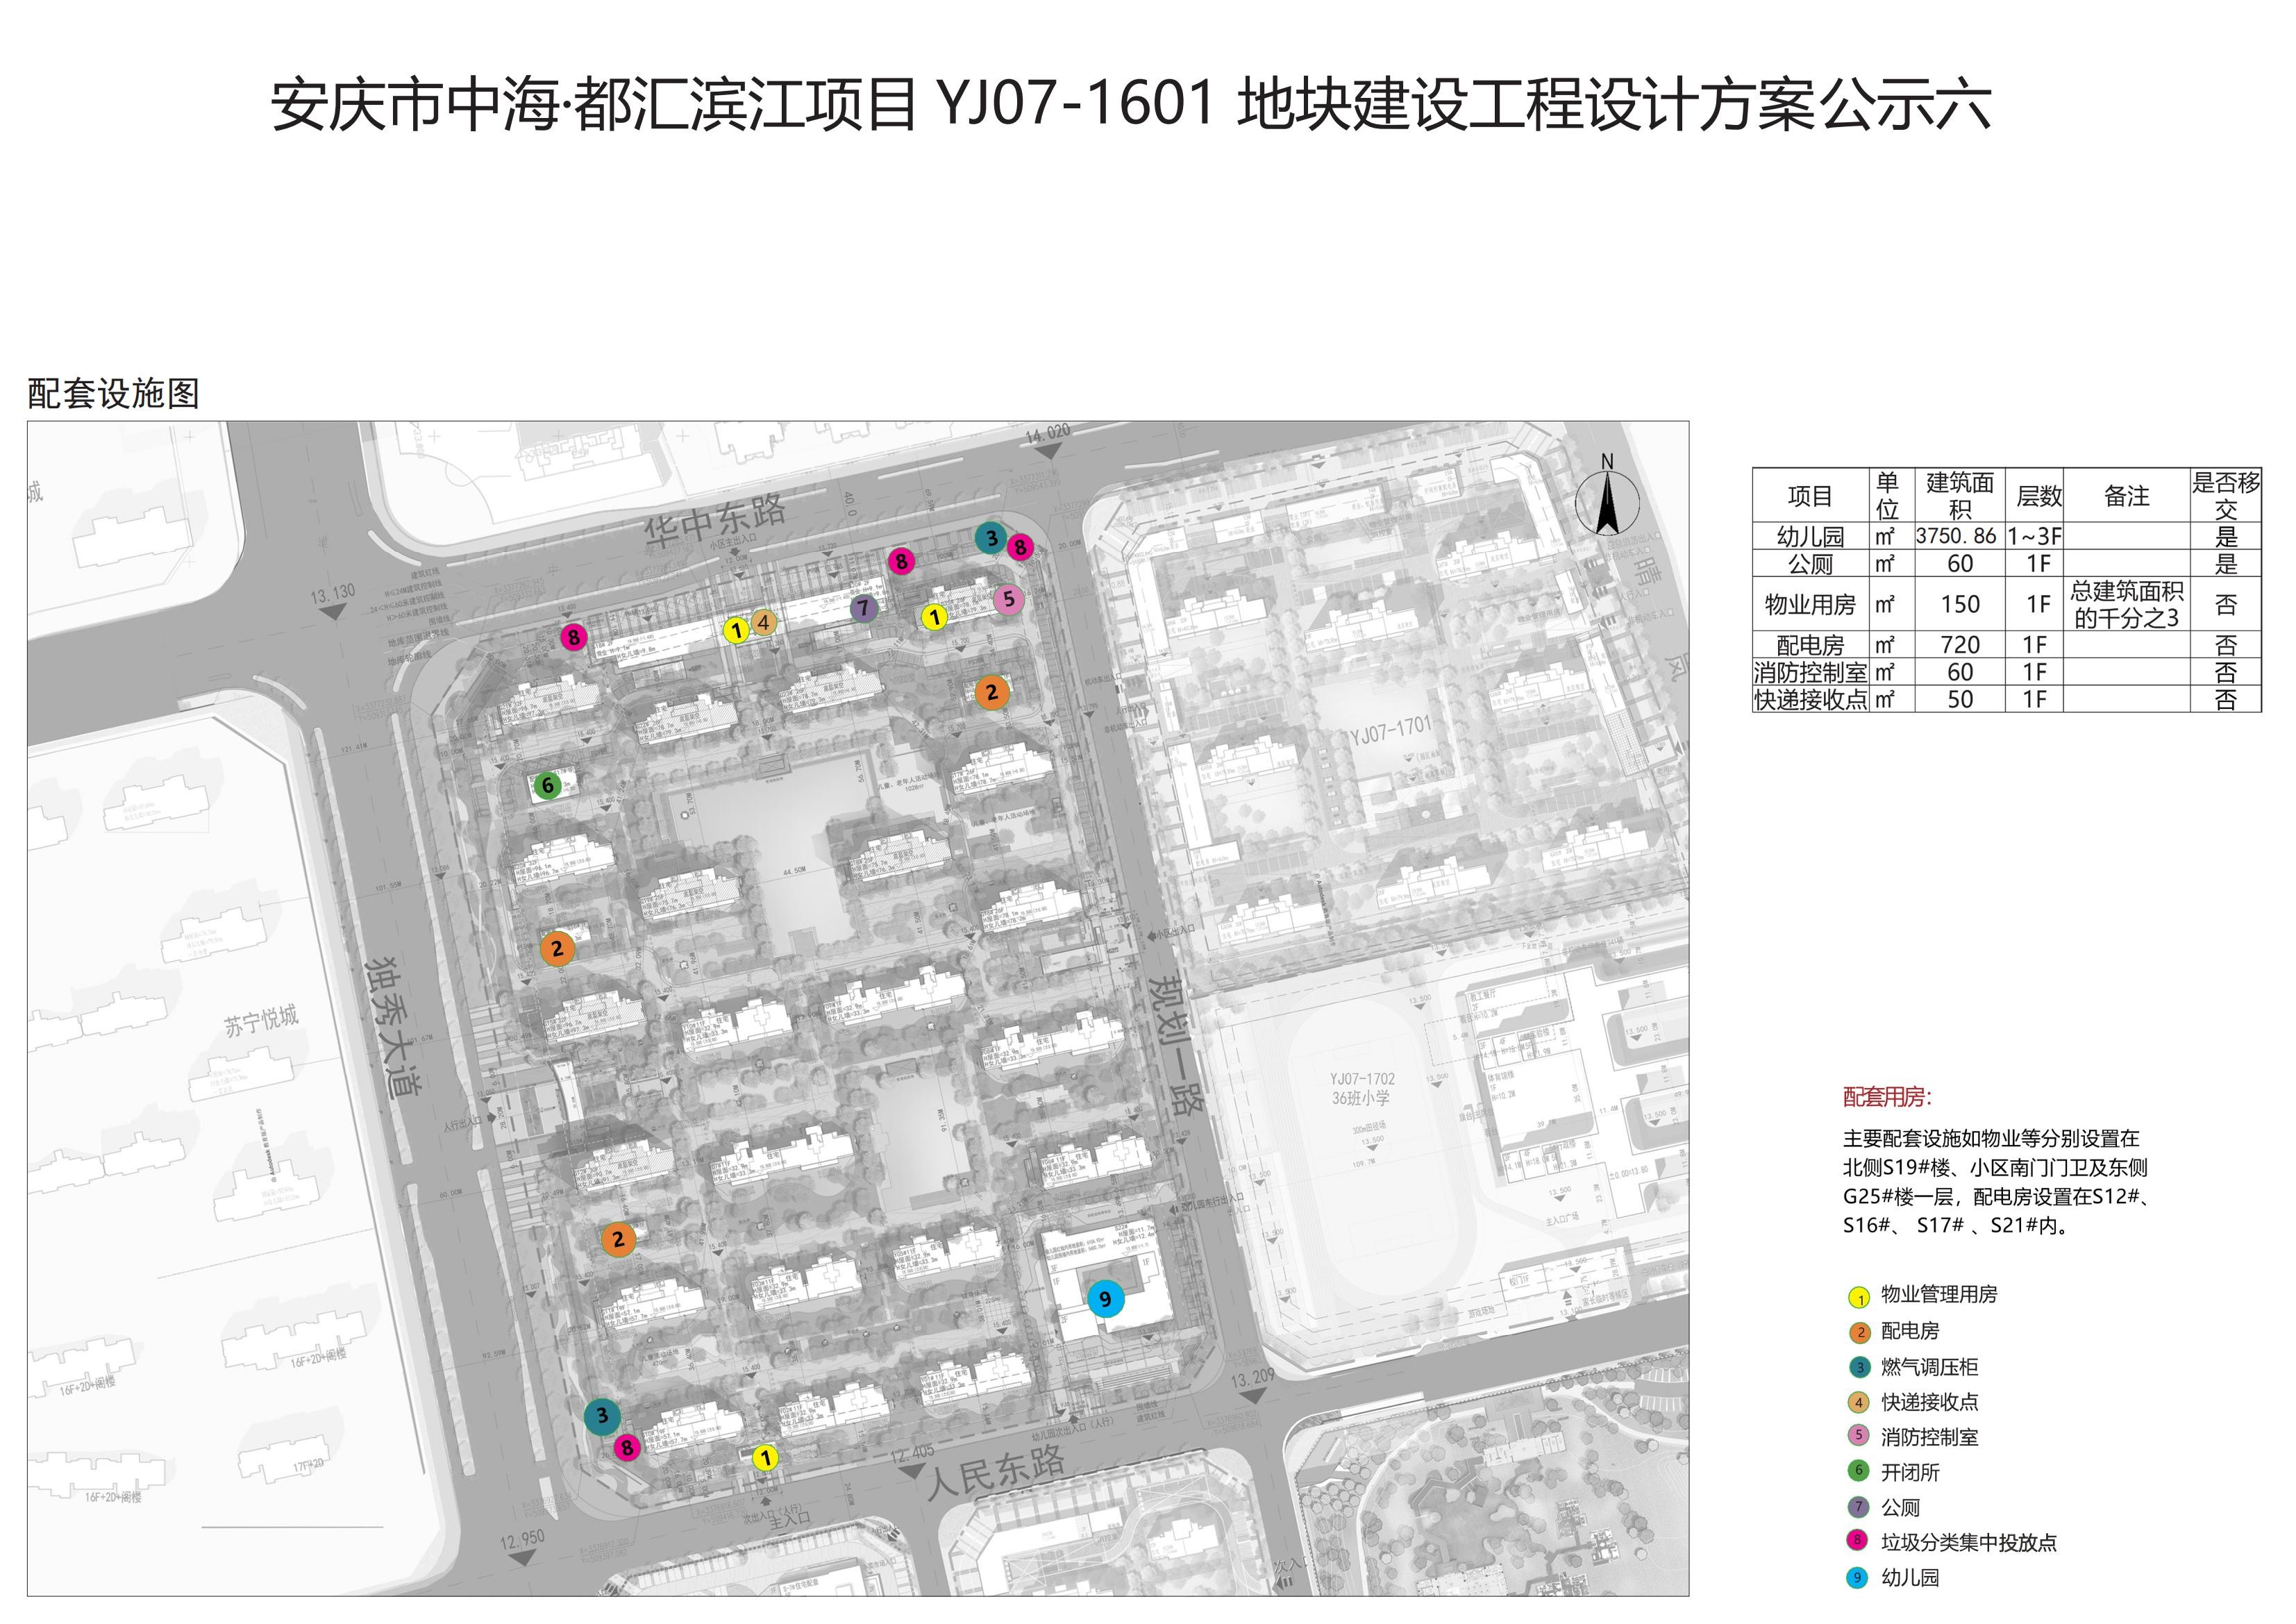 安庆市中海都汇滨江项目yj07160121012201地块建设工程设计方案公示